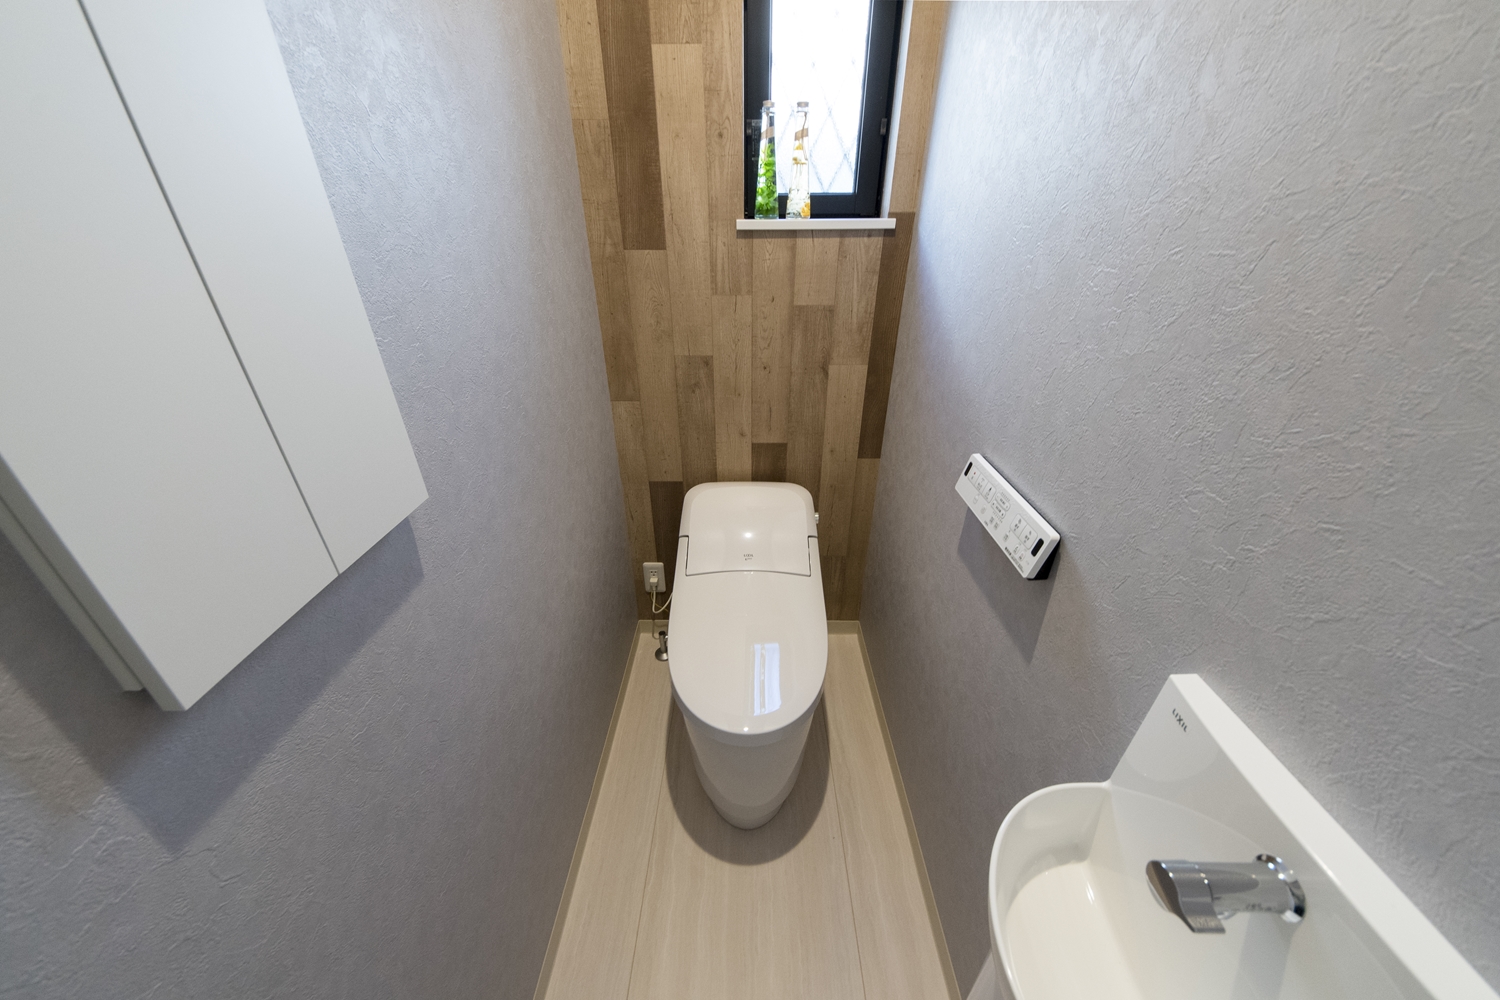 1階トイレ/グレイッシュなクロスと、木の素材感のあるクロスを組み合わせたオシャレな空間。